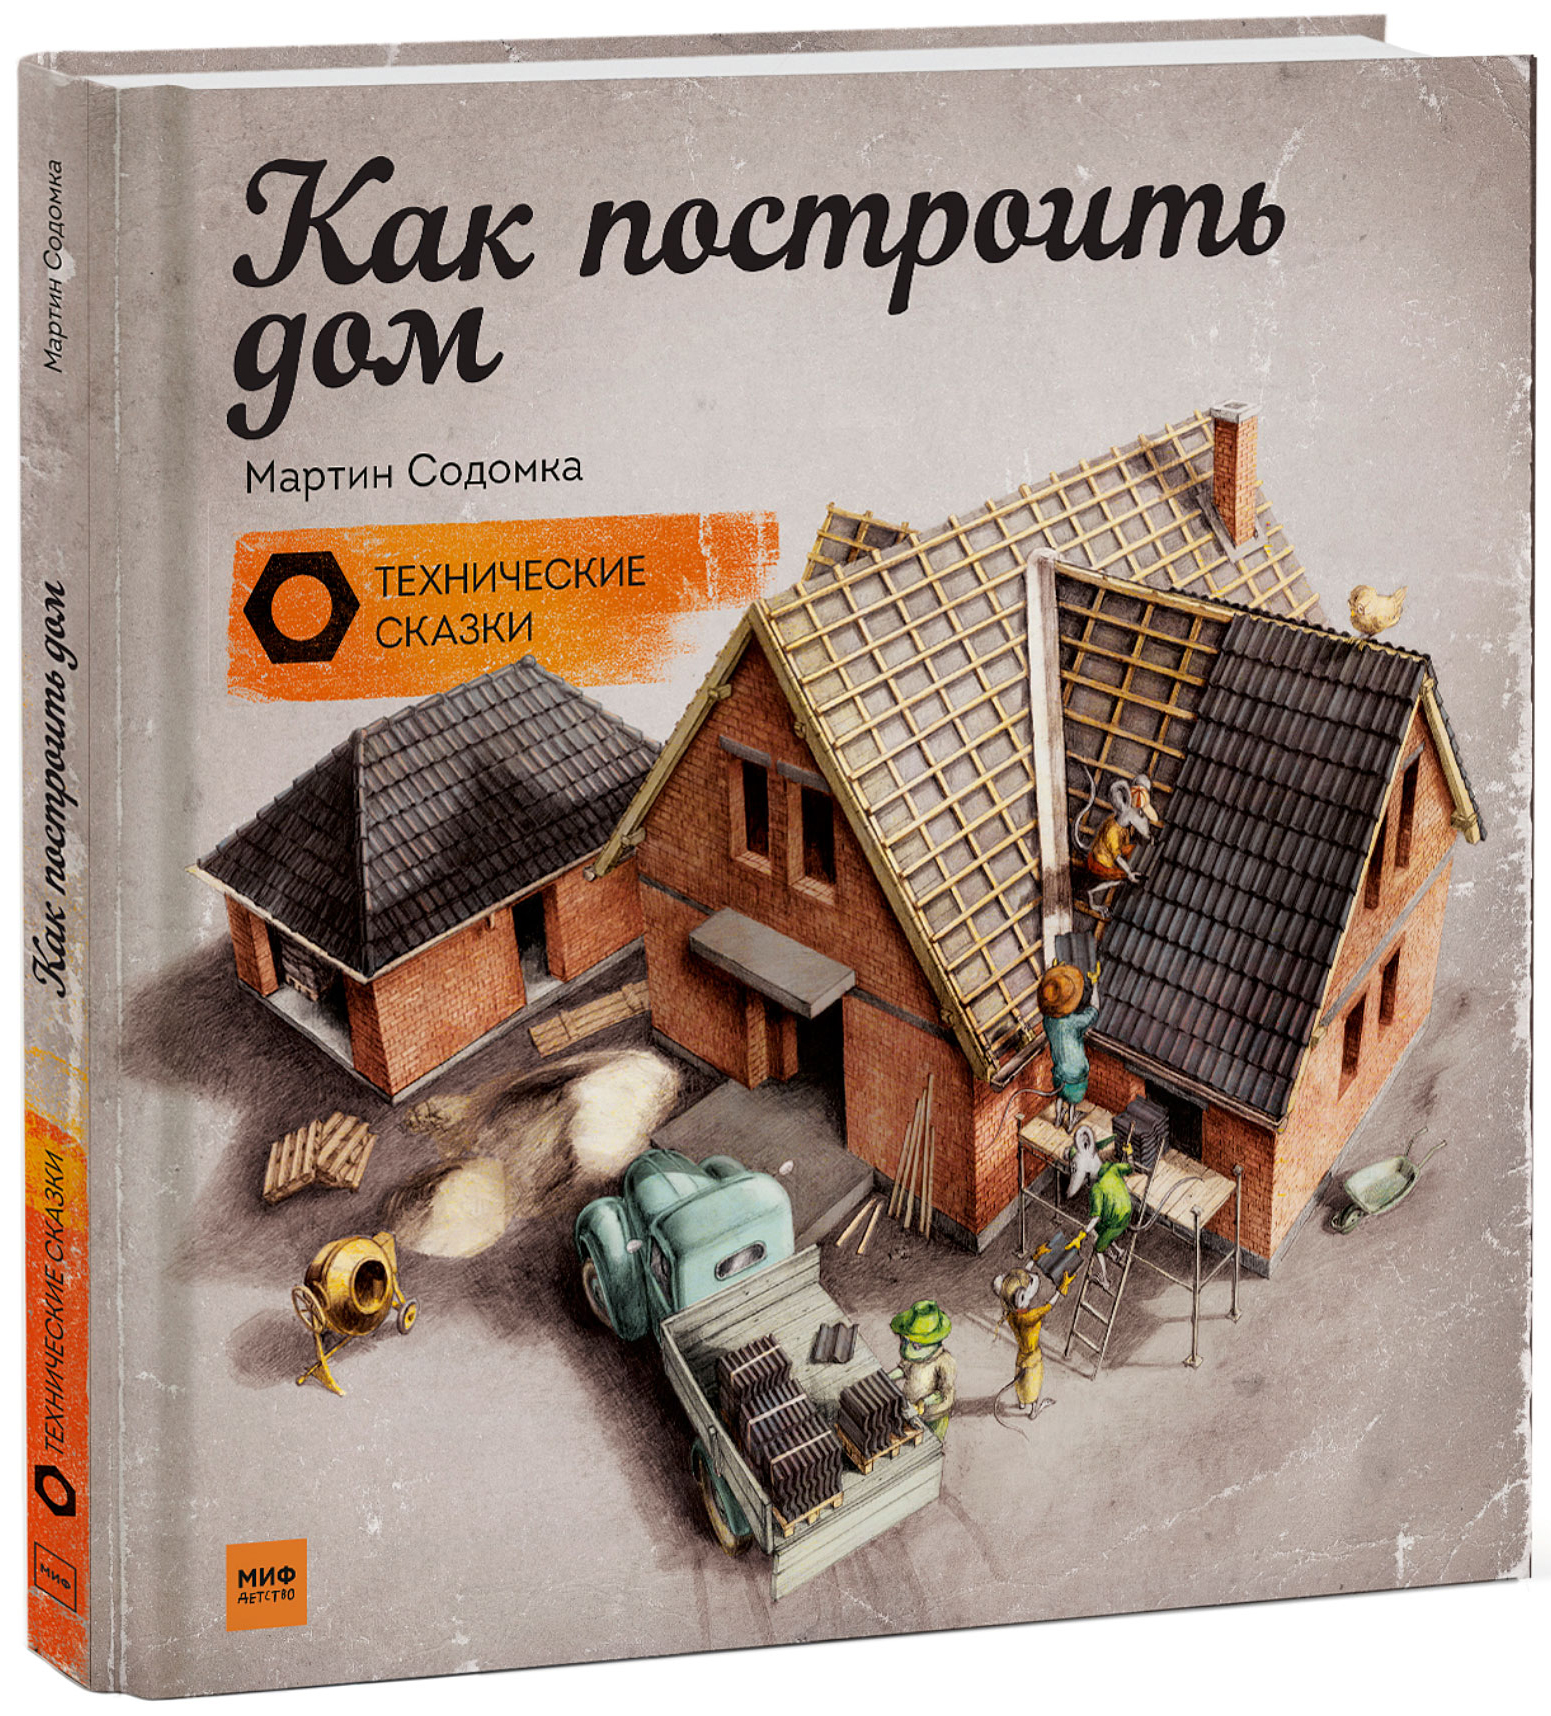 Мартин Содомка "Как построить дом"